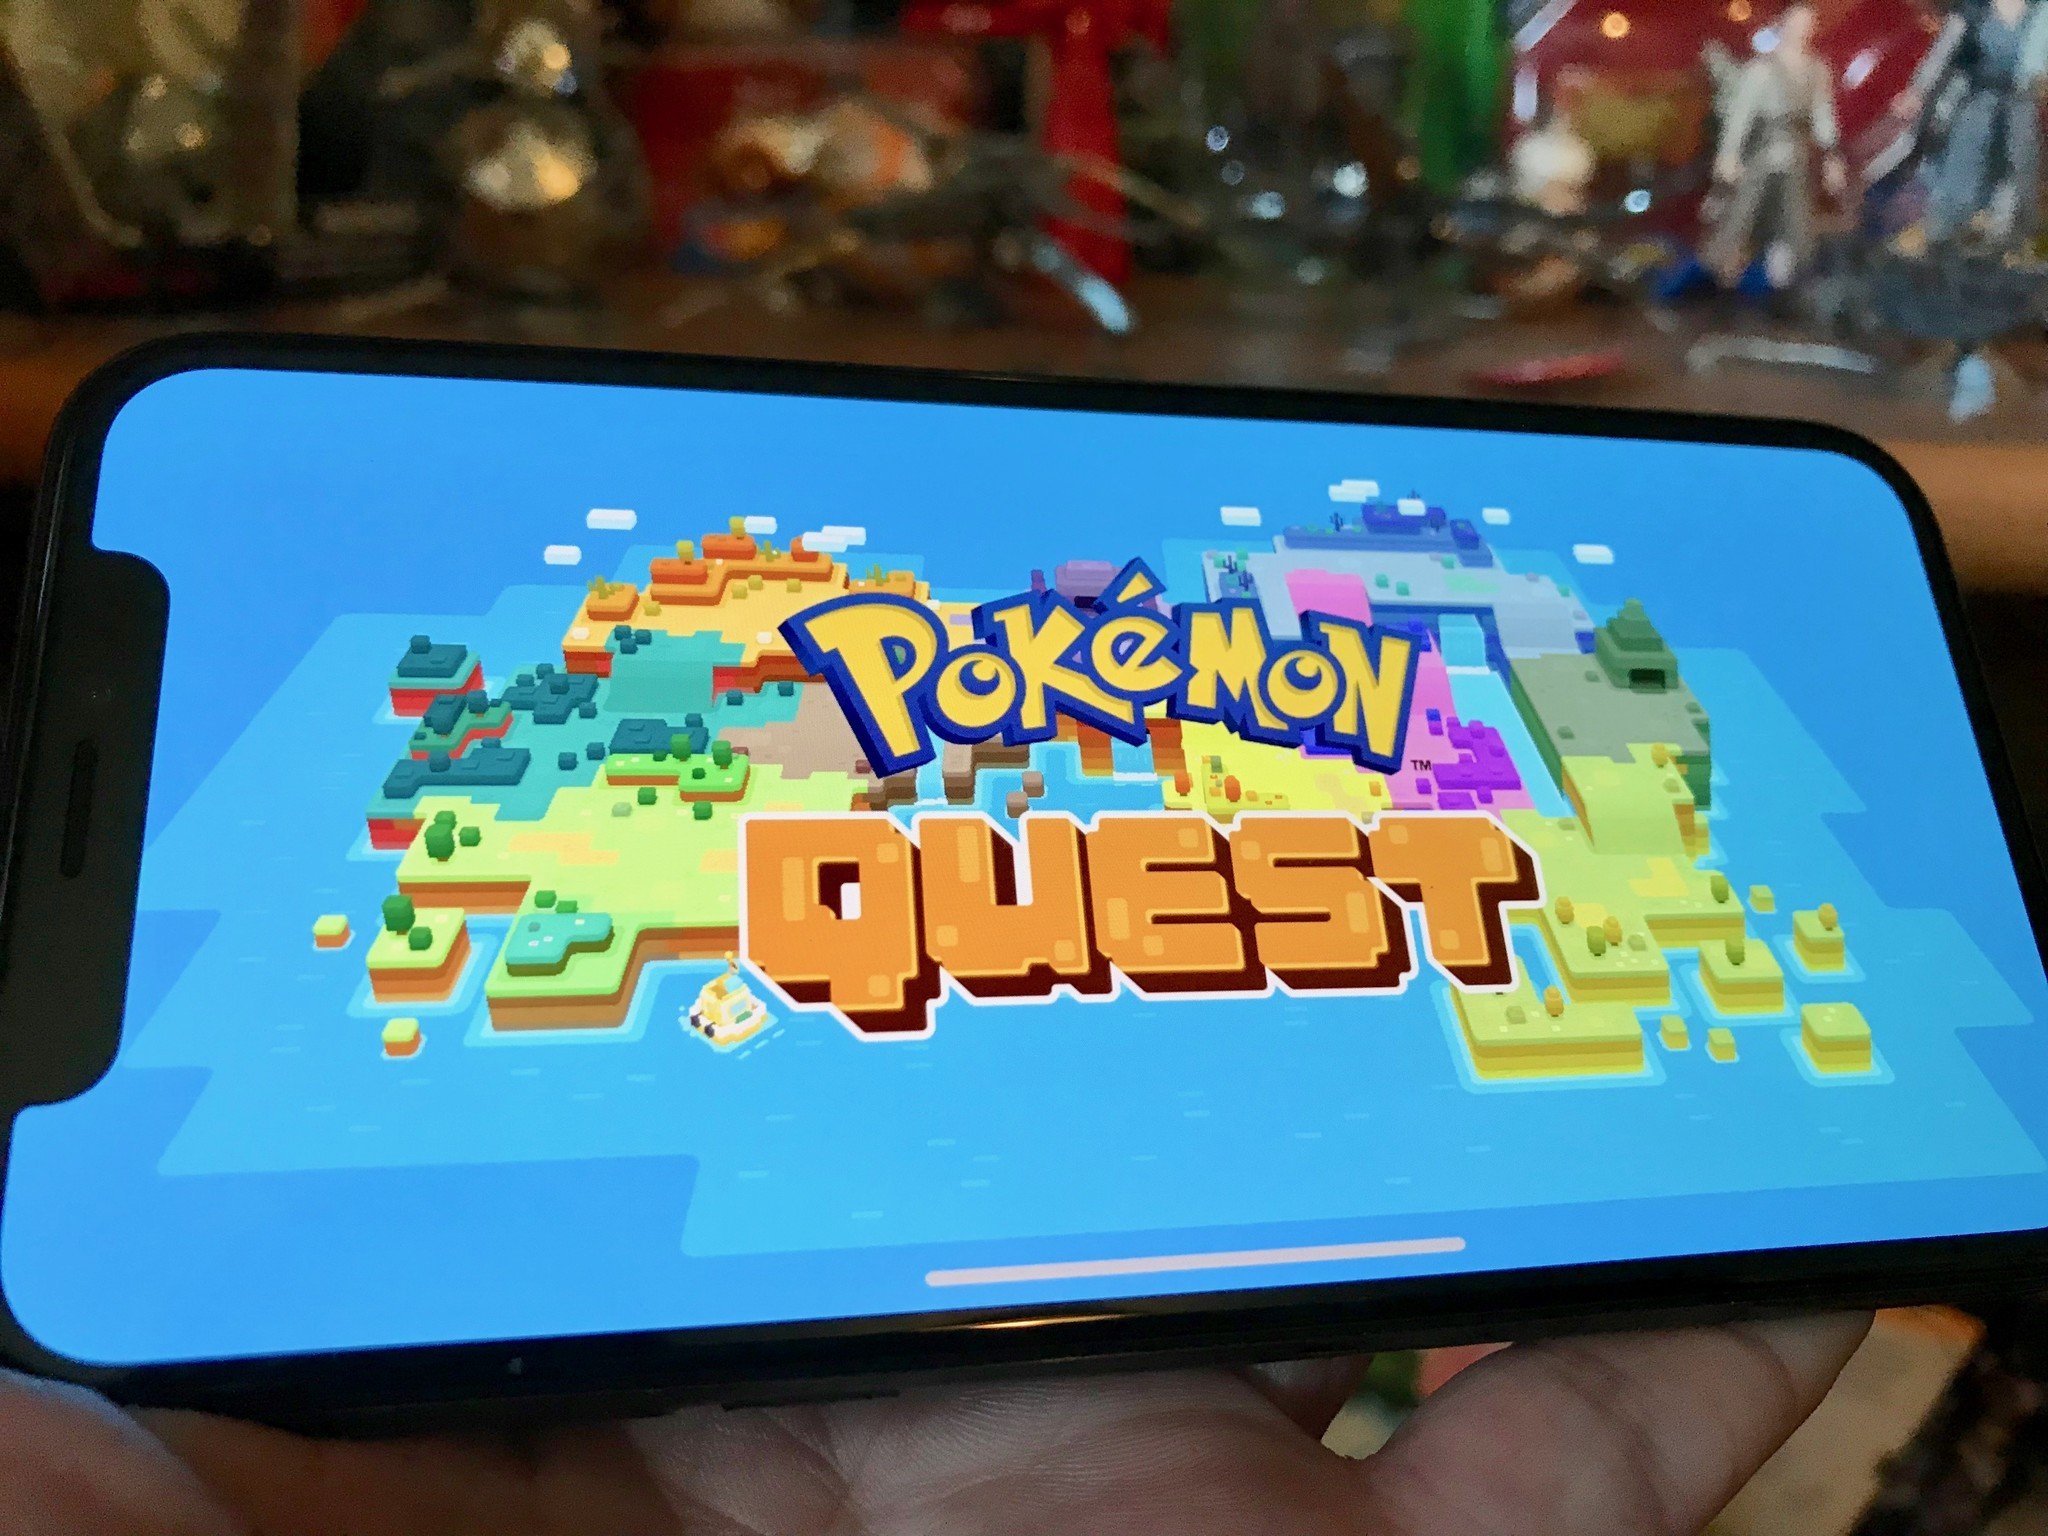 Pokémon Quest